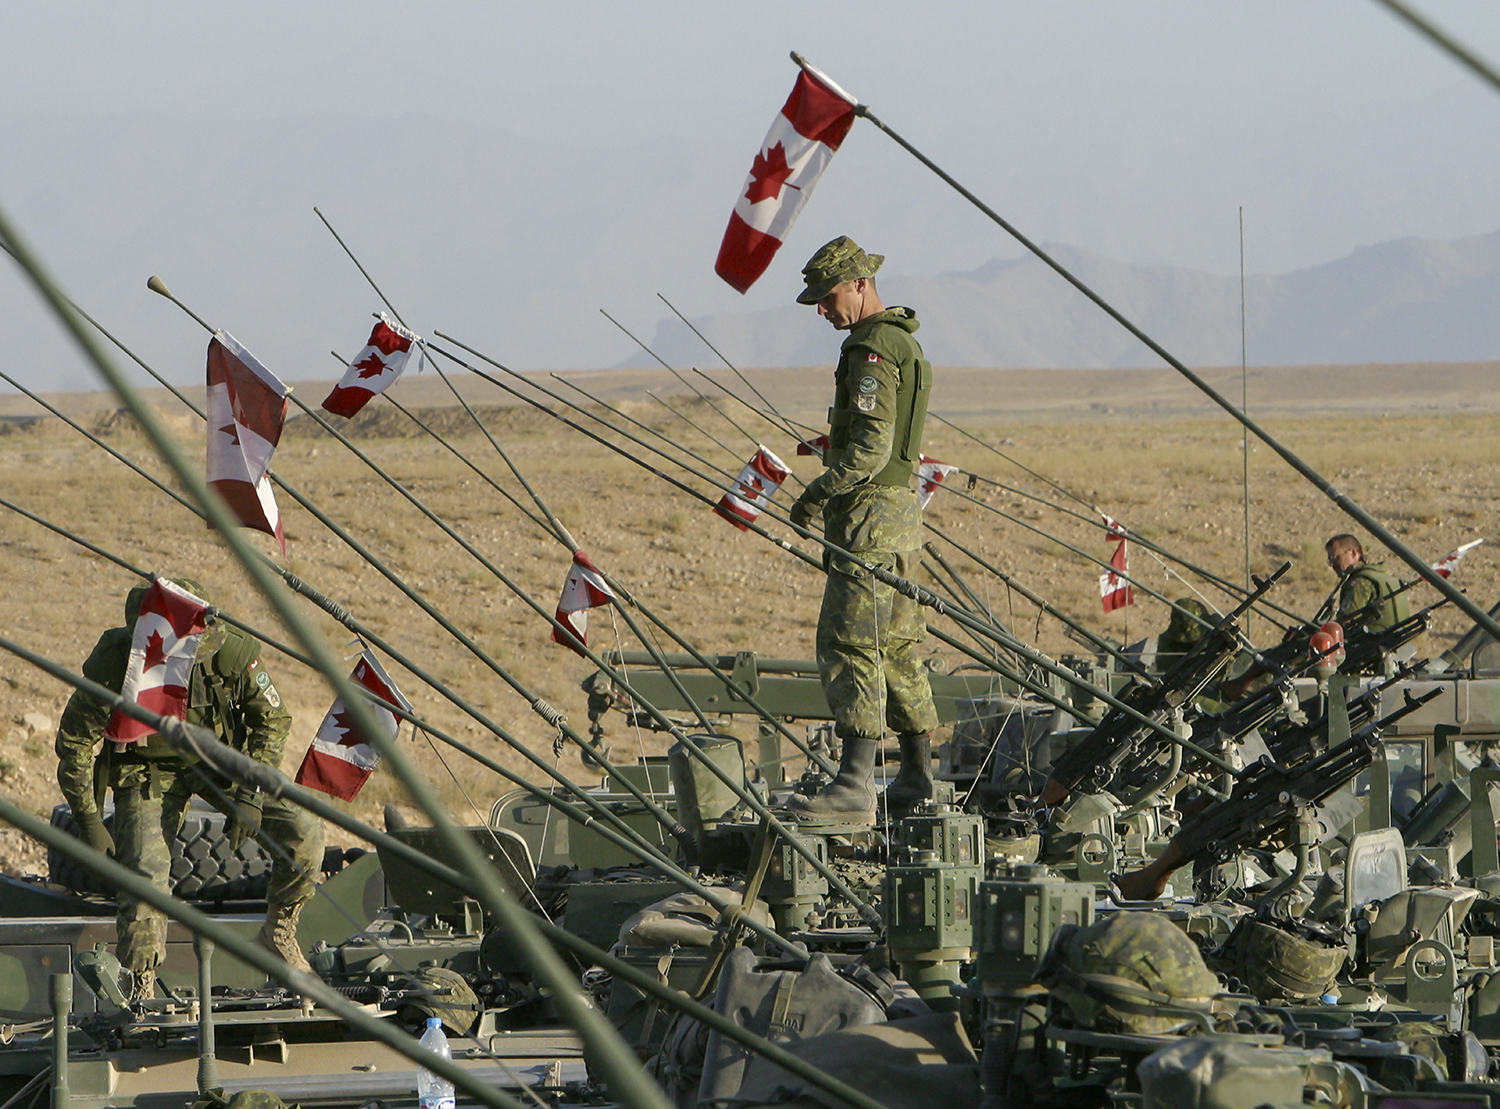 Canadian veterans in Afghanistan